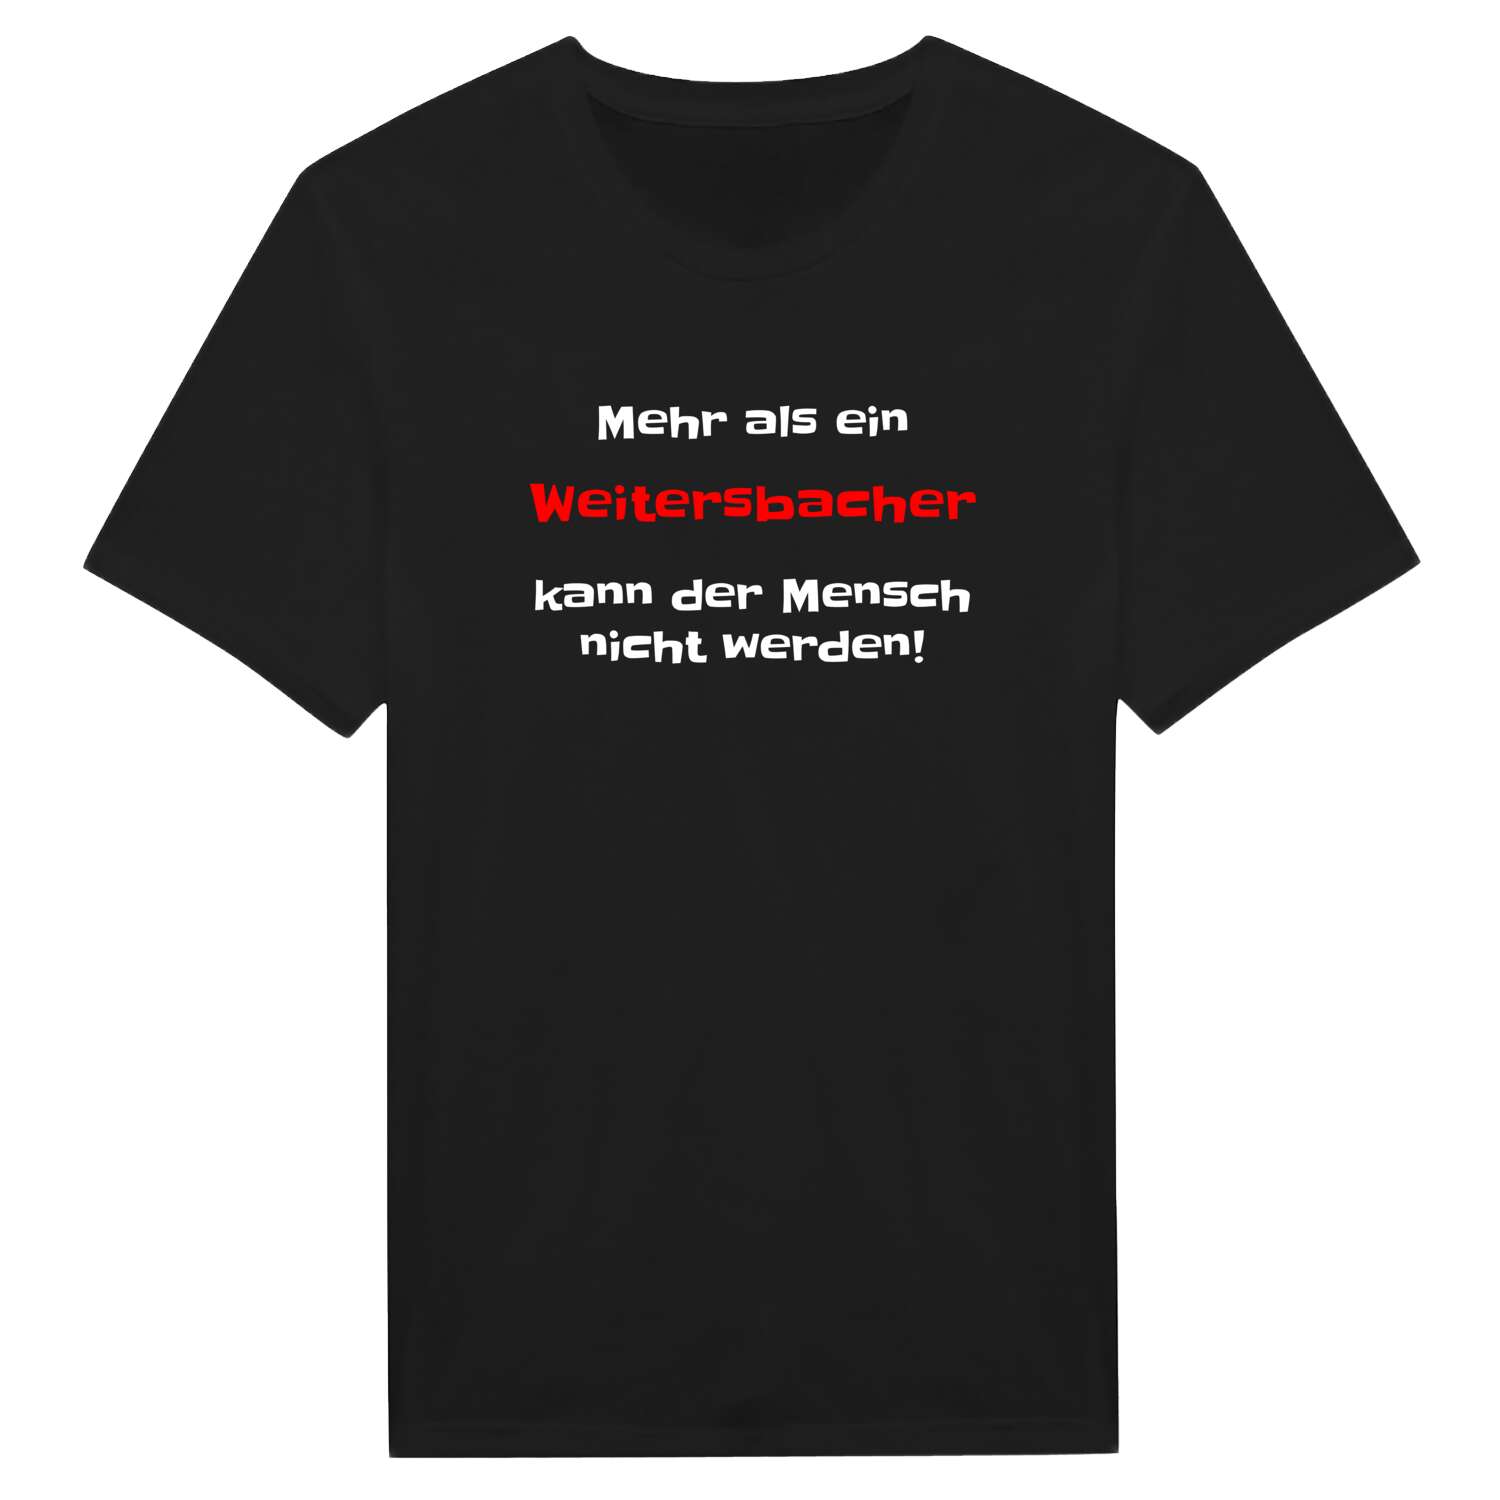 Weitersbach T-Shirt »Mehr als ein«